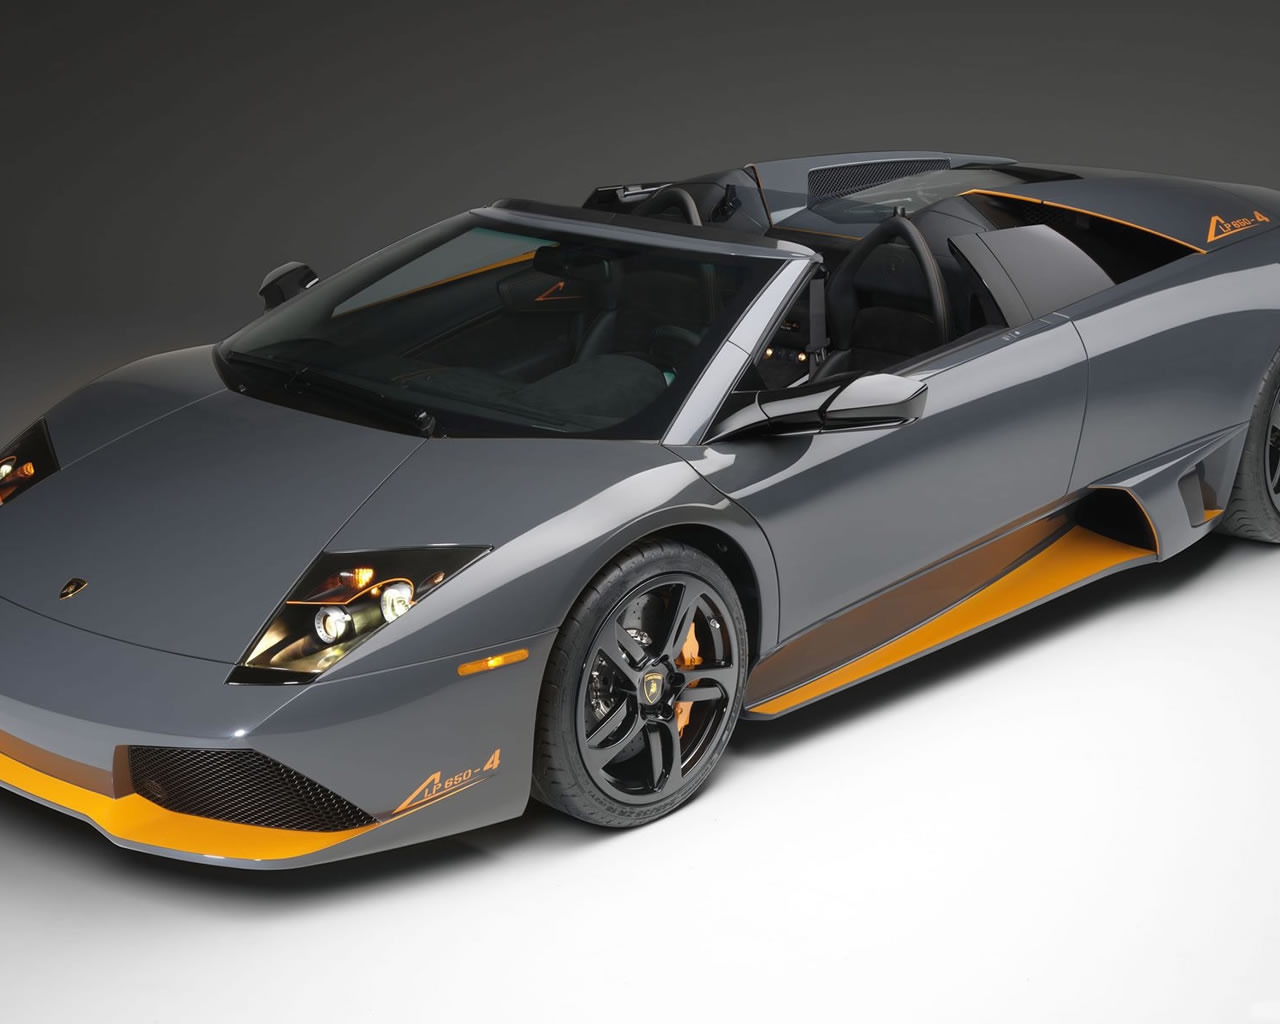 Lamborghini lp 650 Front Angle for 1280 x 1024 resolution